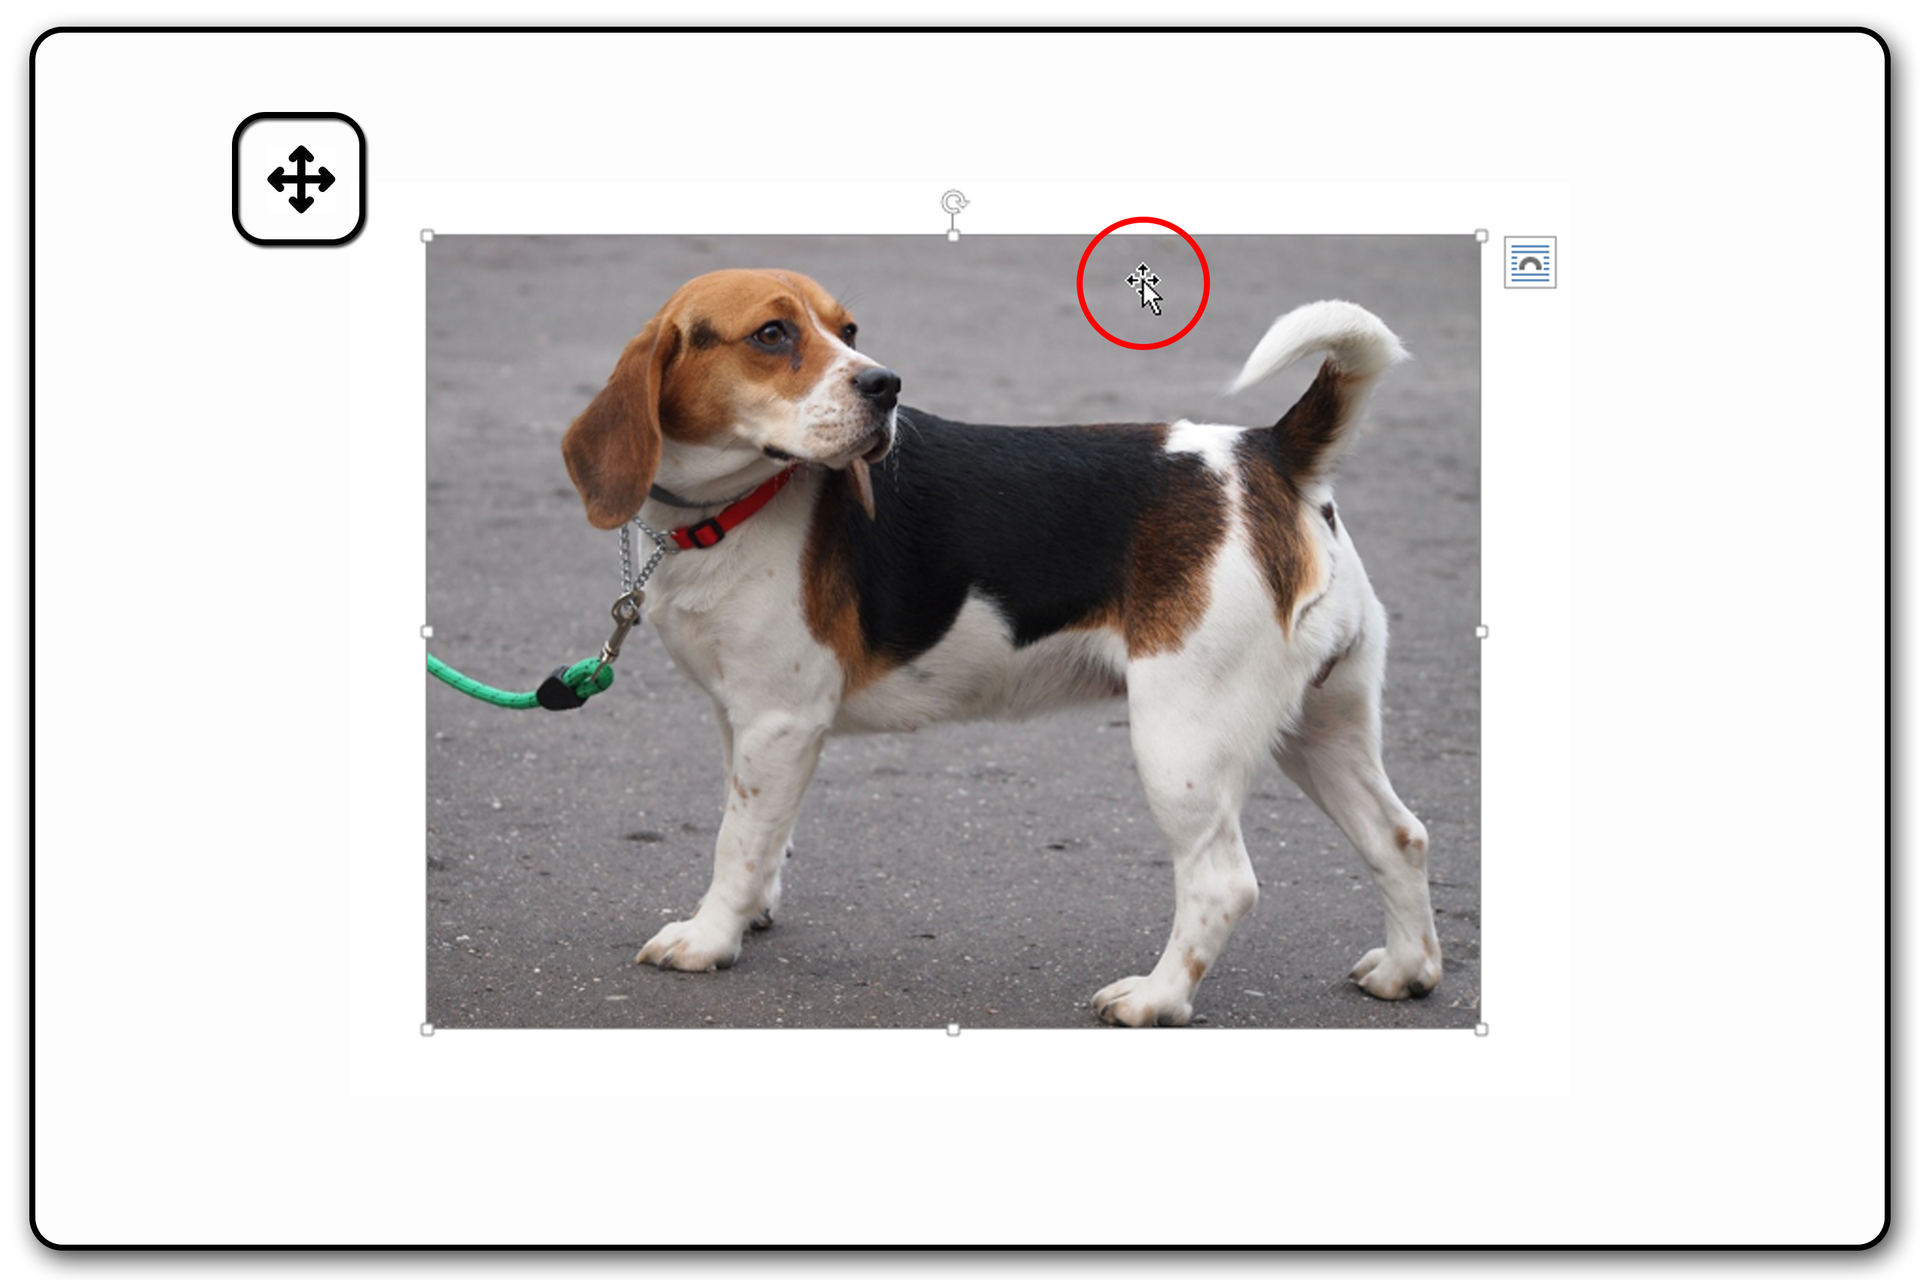 Zrzut ekranu przykładowej prezentacji ze zdjęciem i widocznym kursorem myszy nad zaznaczonym obrazem. Na zrzucie jest pies.